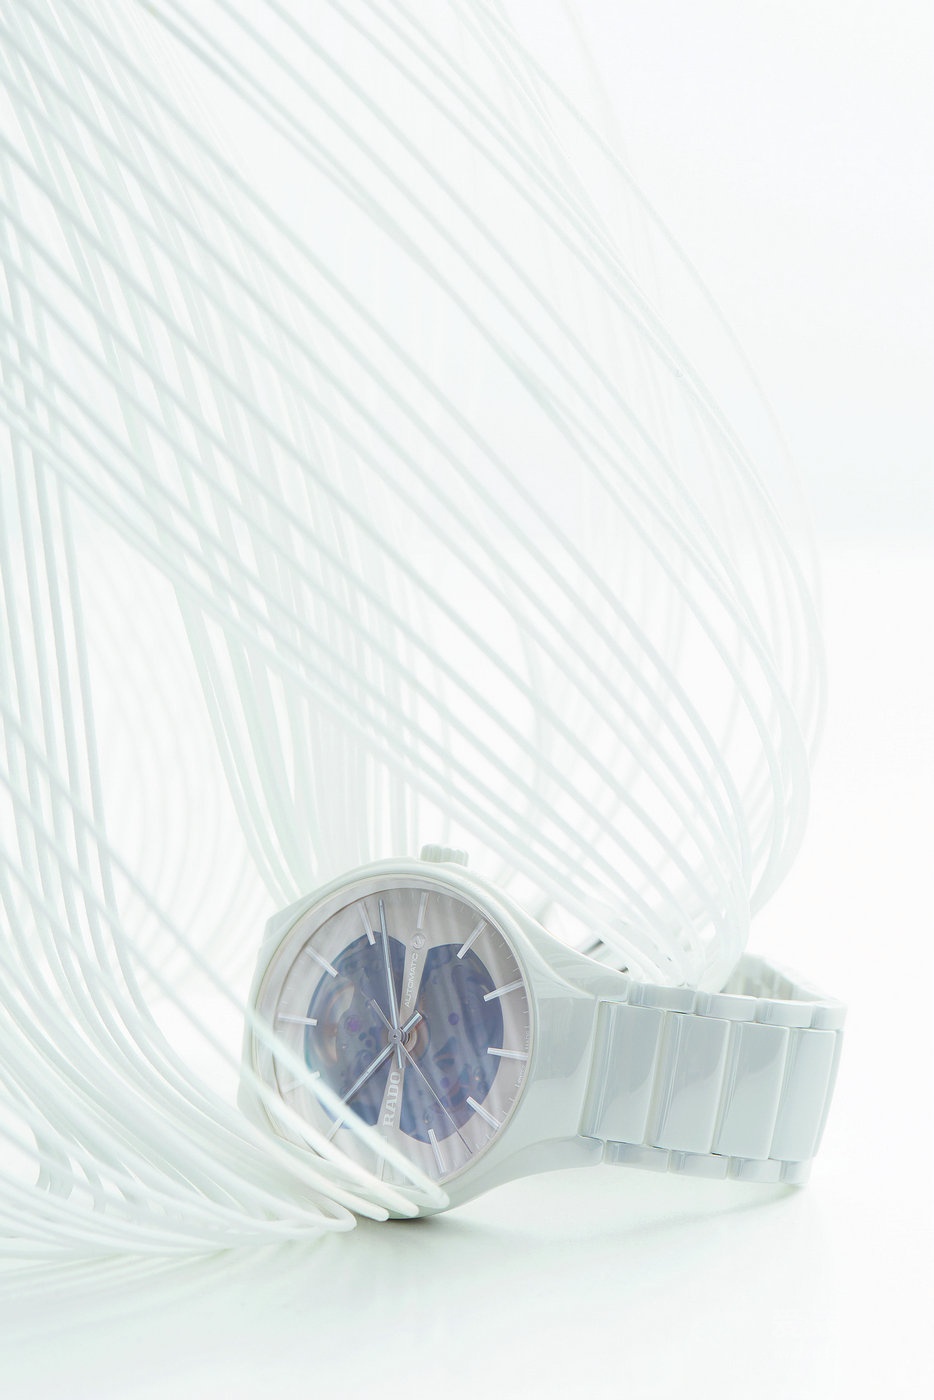 超凡轻盈 遨游时空 RADO瑞士雷达表揭幕两款全新True 真系列开芯腕表